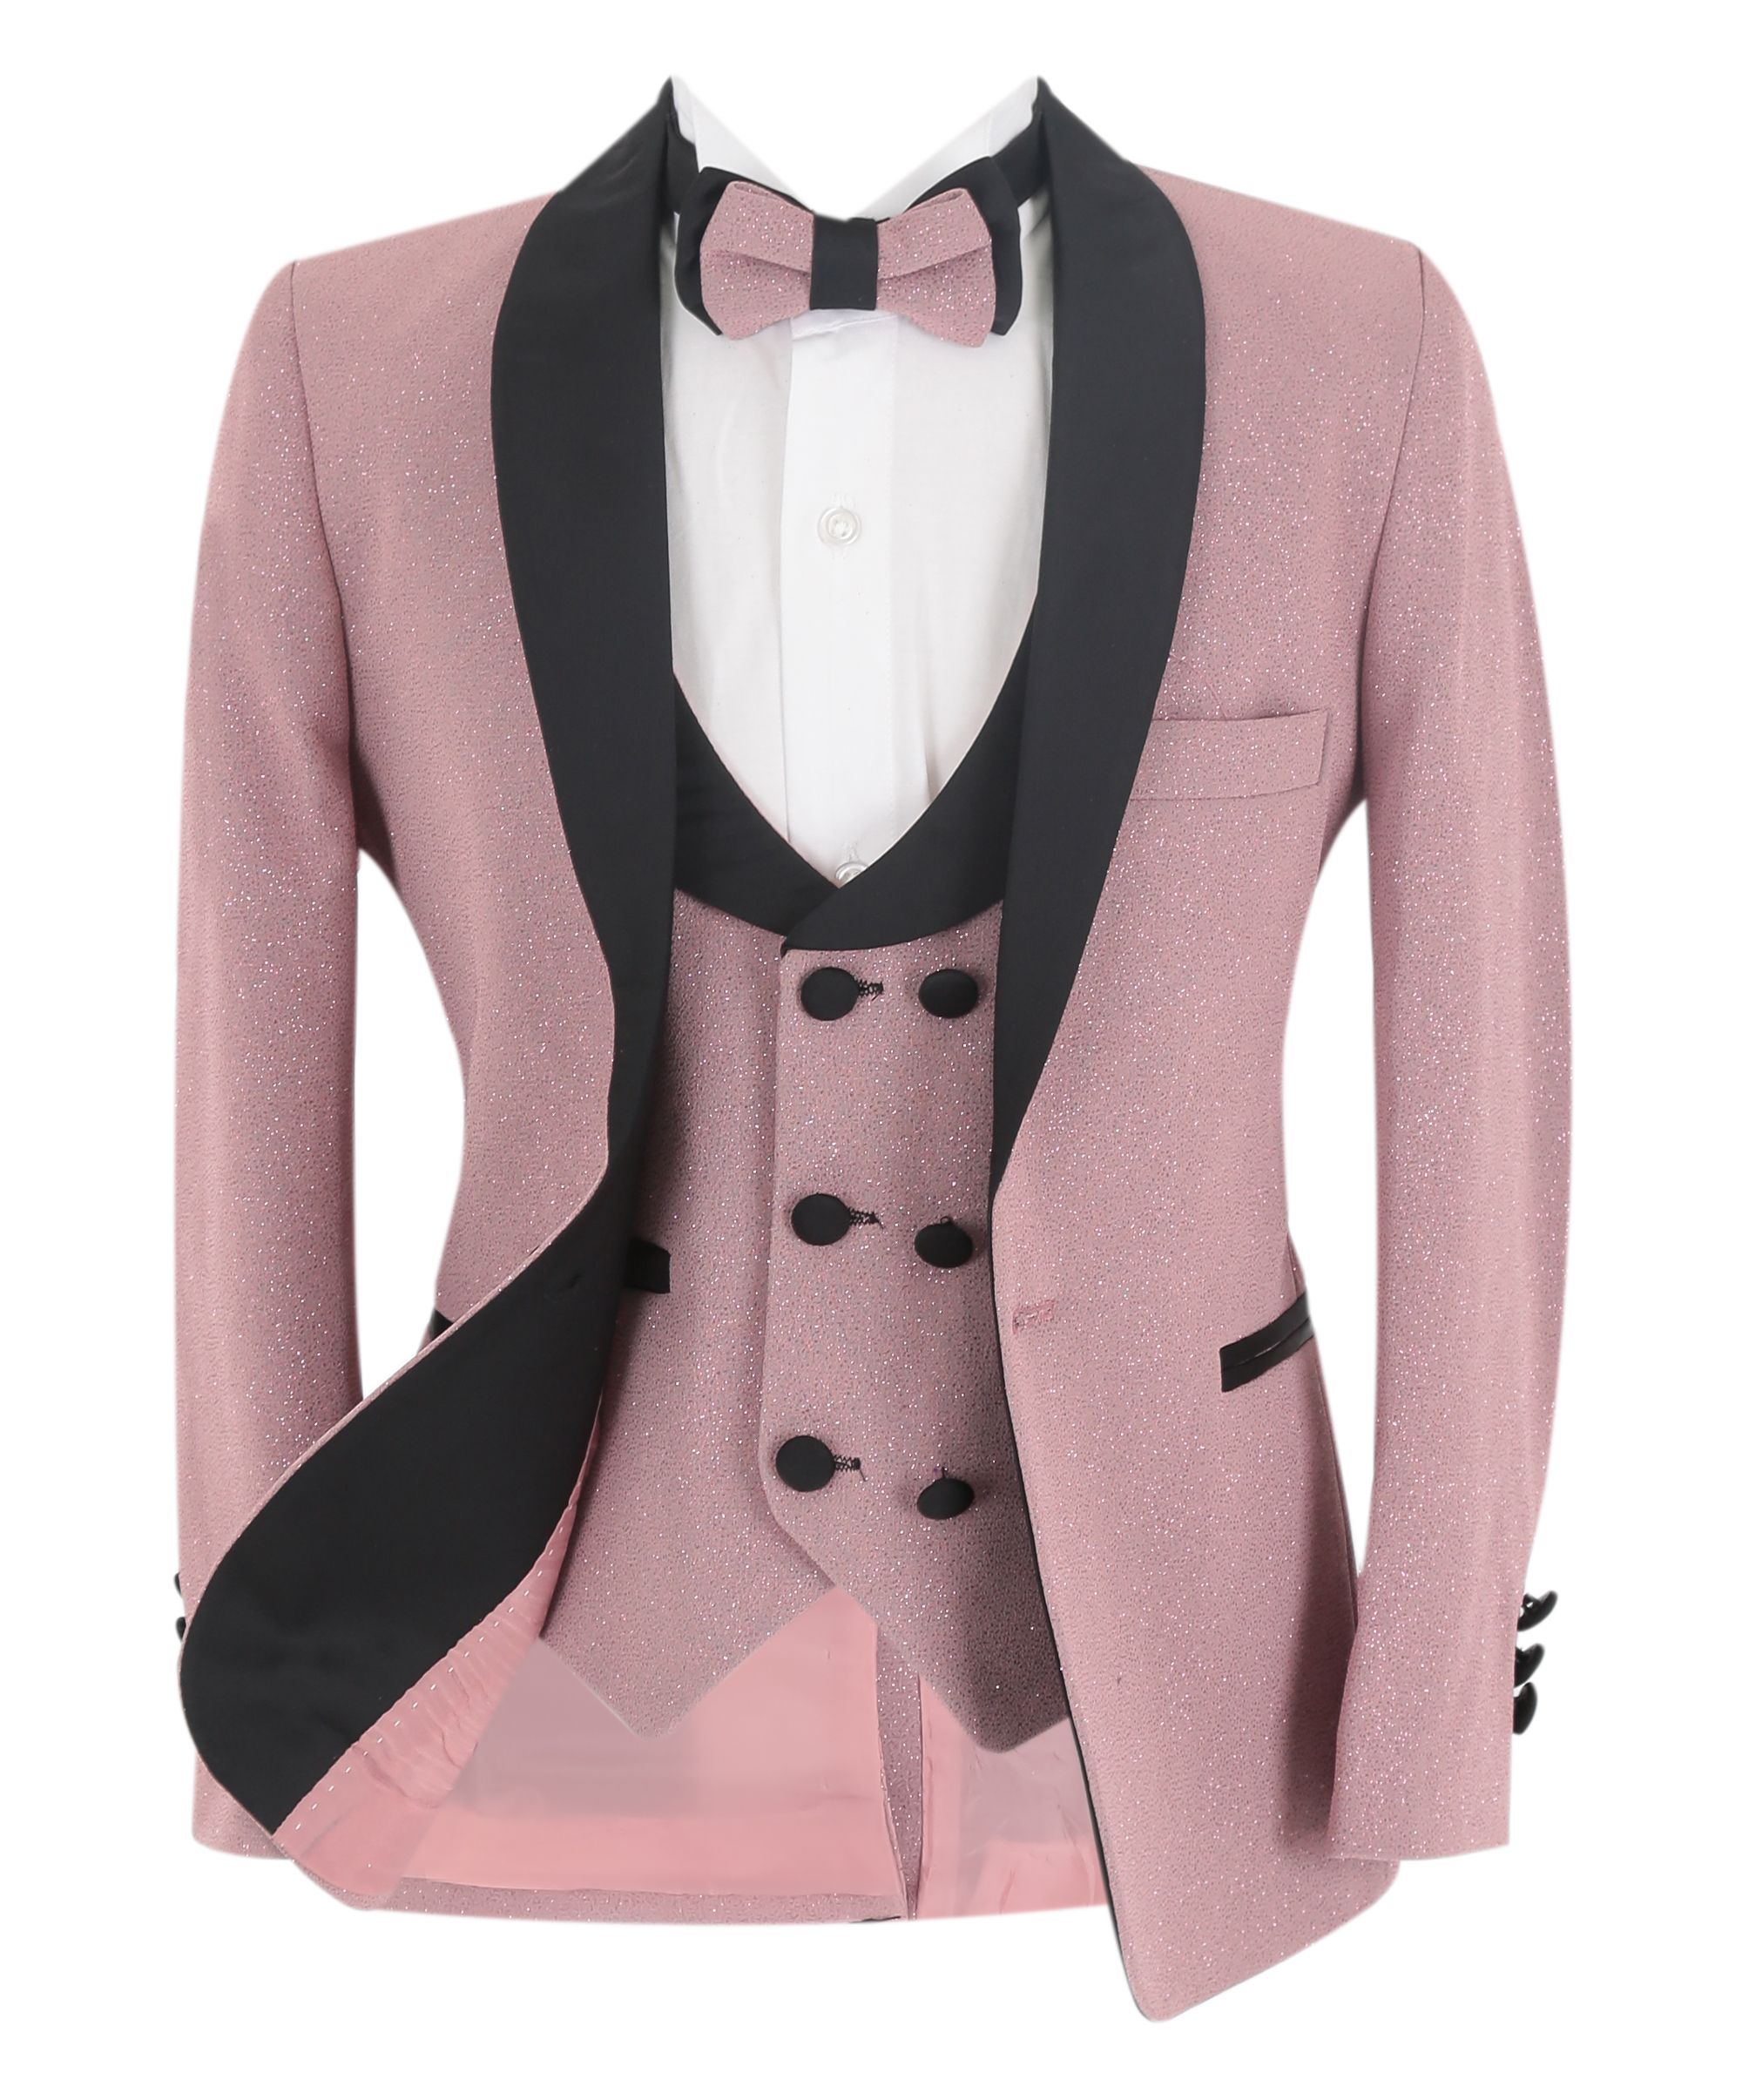 Slim Fit Glitzer-Smoking-Hochzeitsanzug für Jungen, 5-teiliges Komplettset - Erröten rosa